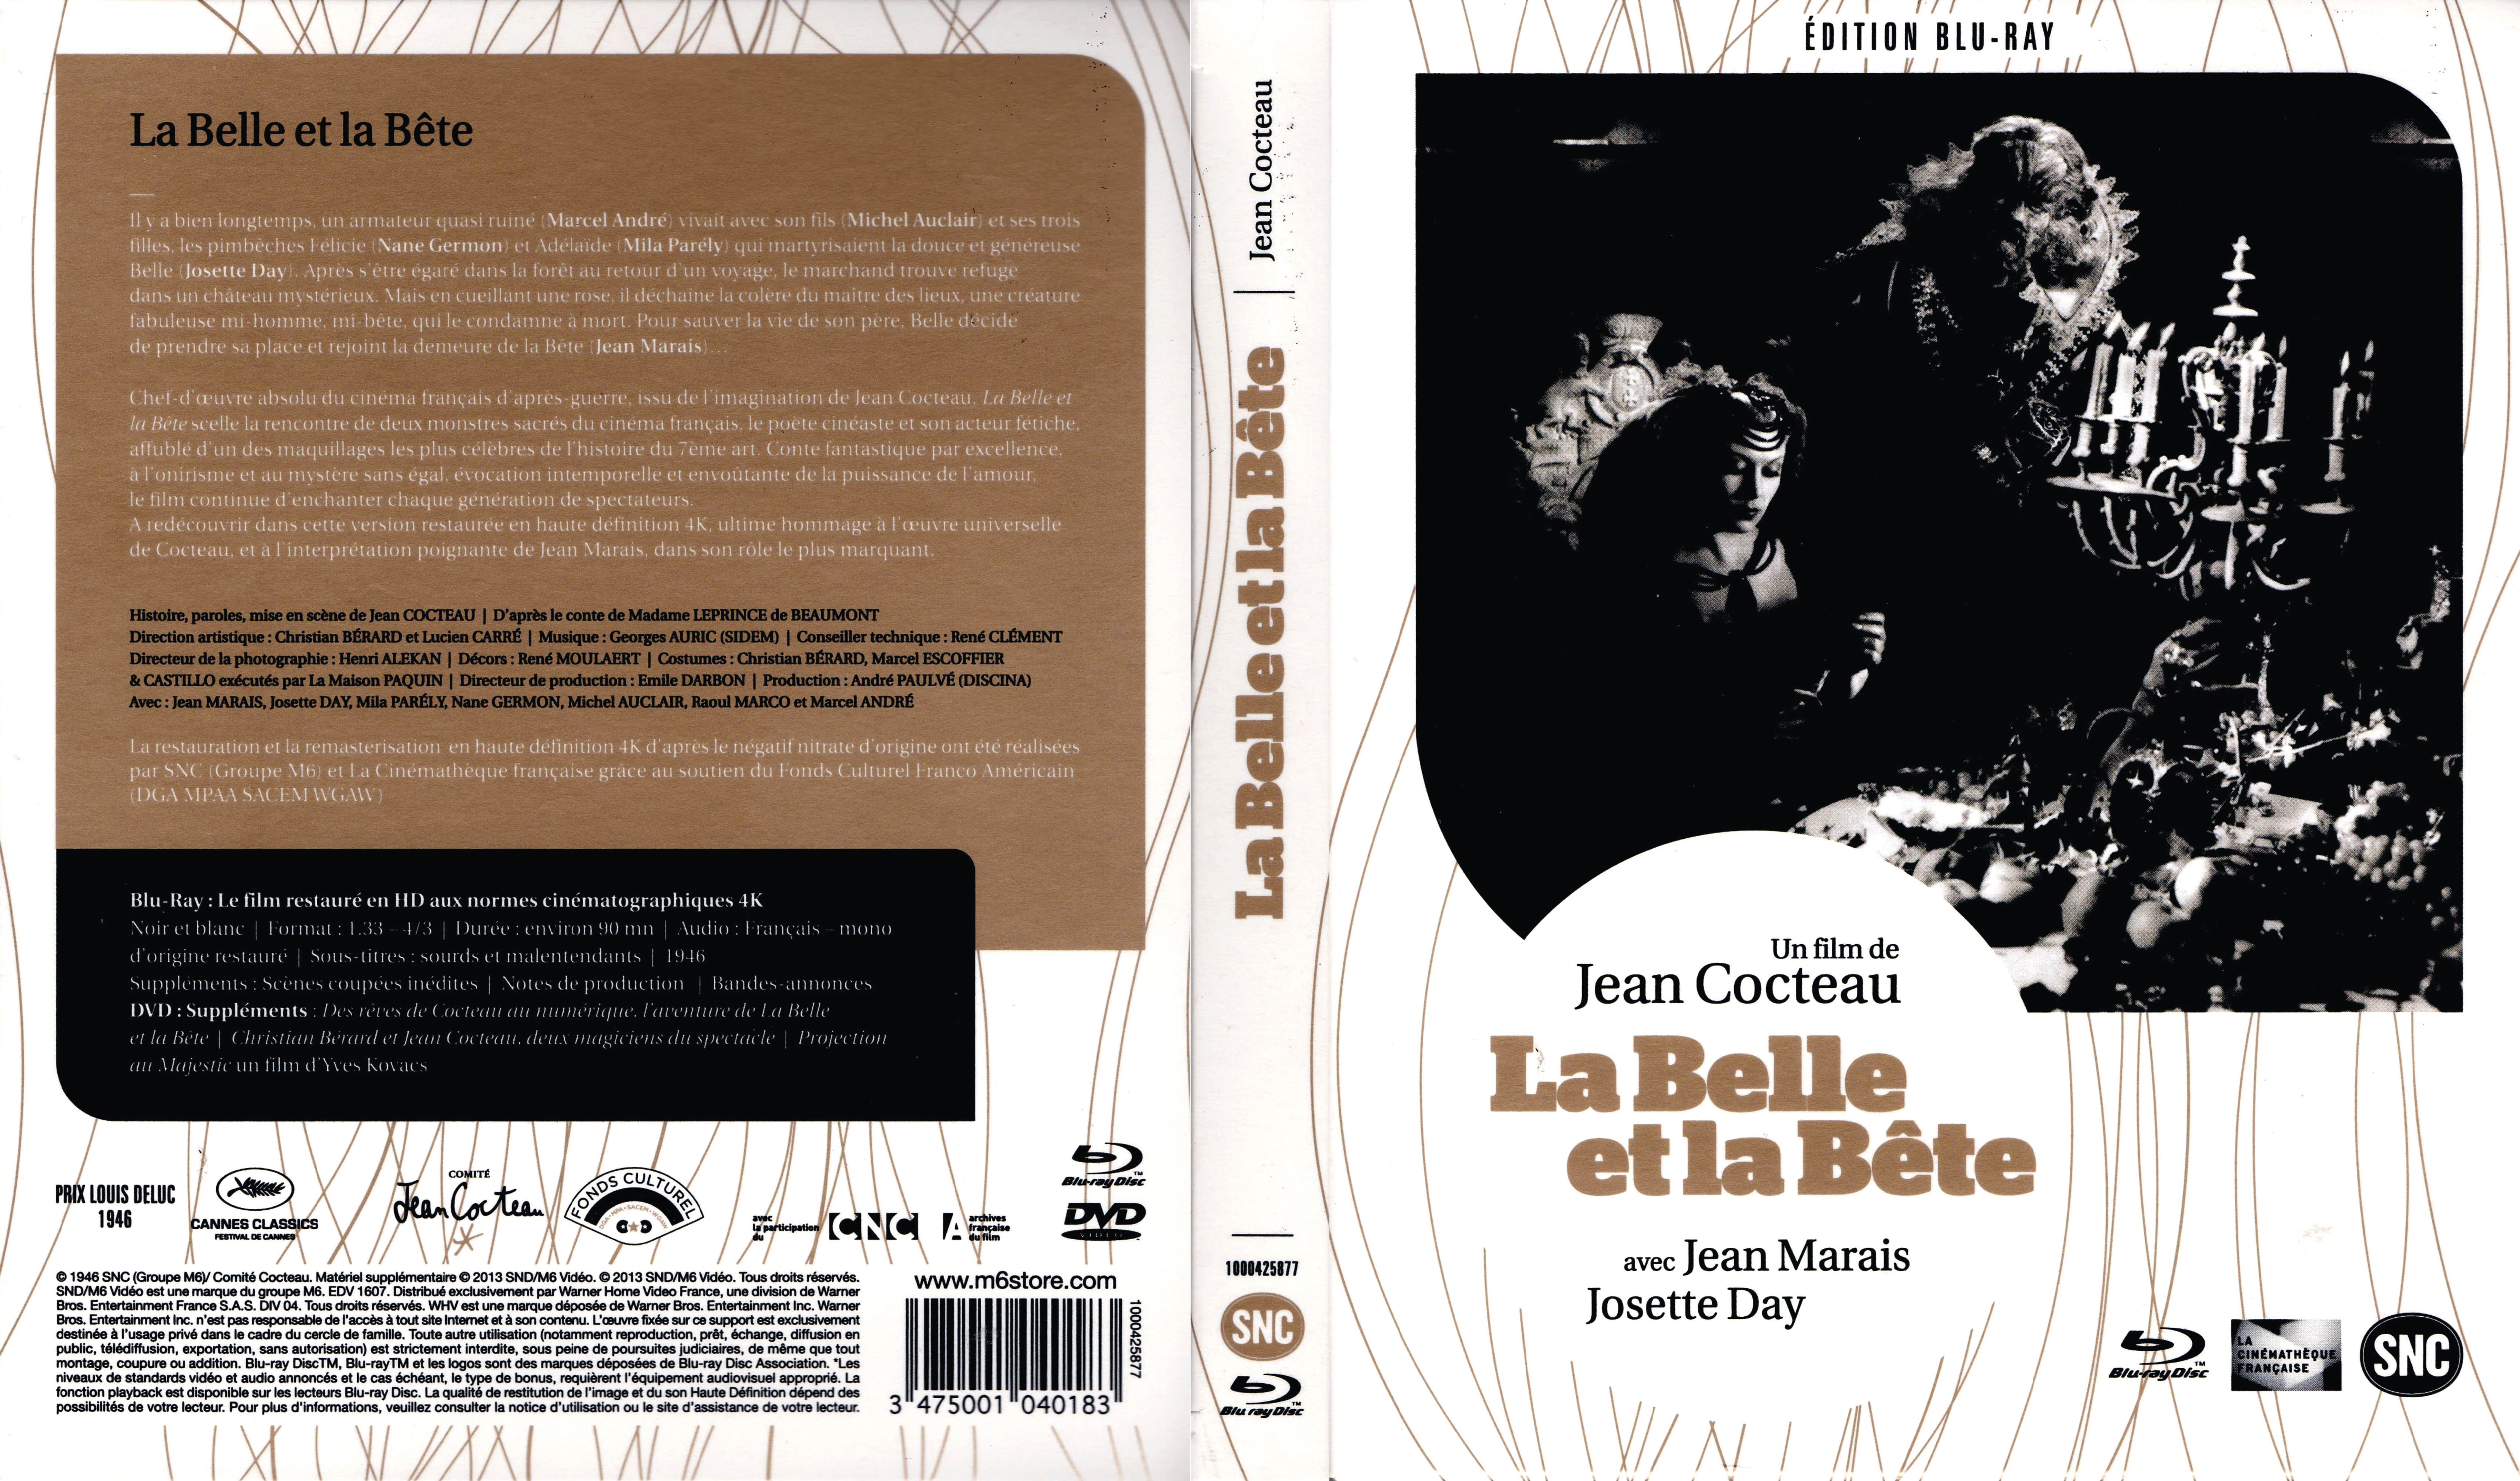 Jaquette DVD La belle et la bte Le film (BLU-RAY)